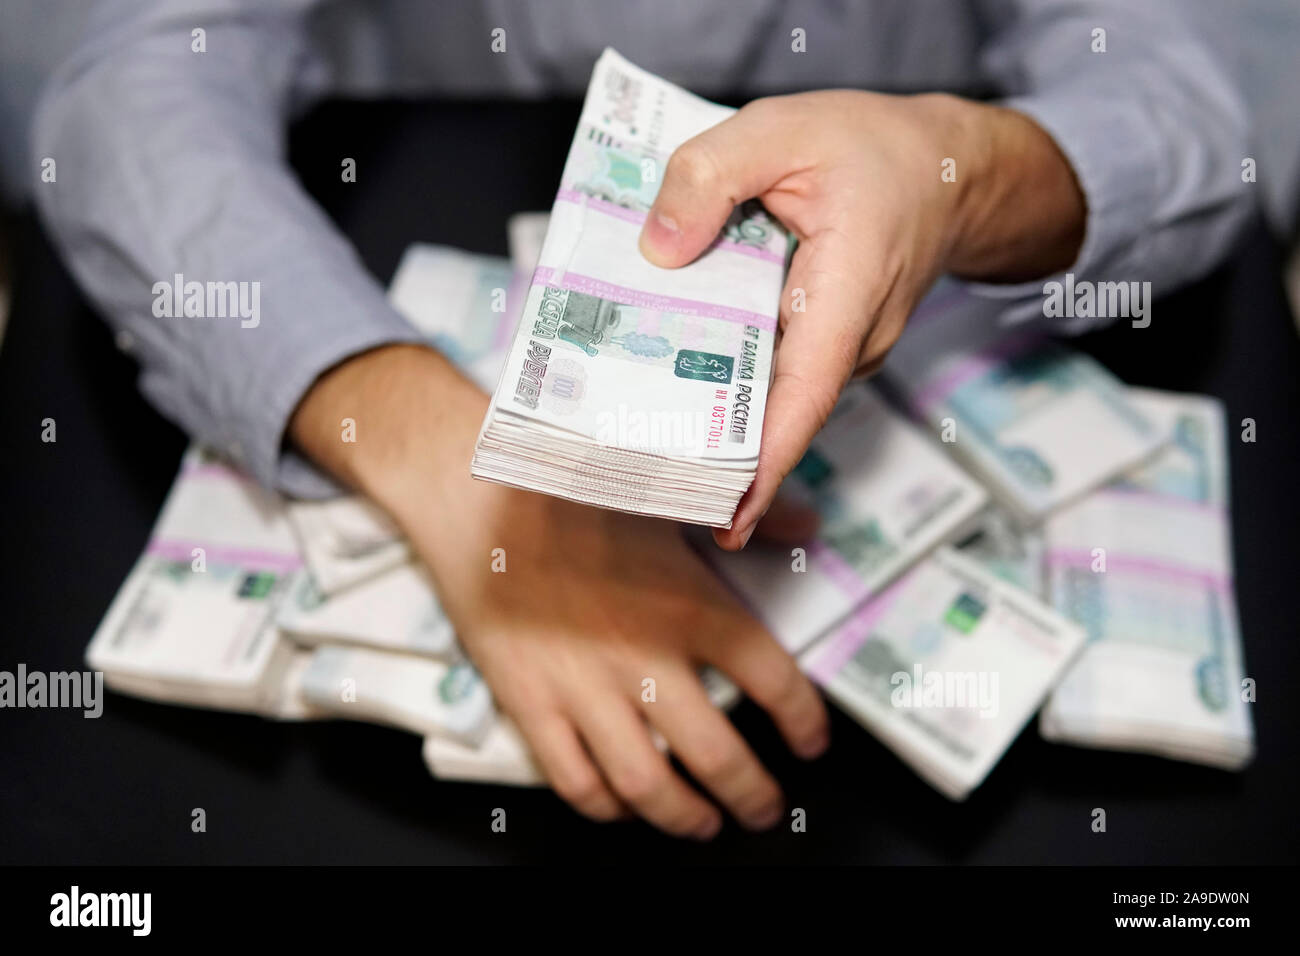 Les mains des hommes pour atteindre une liasse d'argent. Un million de roubles sur le tableau noir. Le concept de la richesse, le succès, la cupidité et la corruption, la soif de mone Banque D'Images